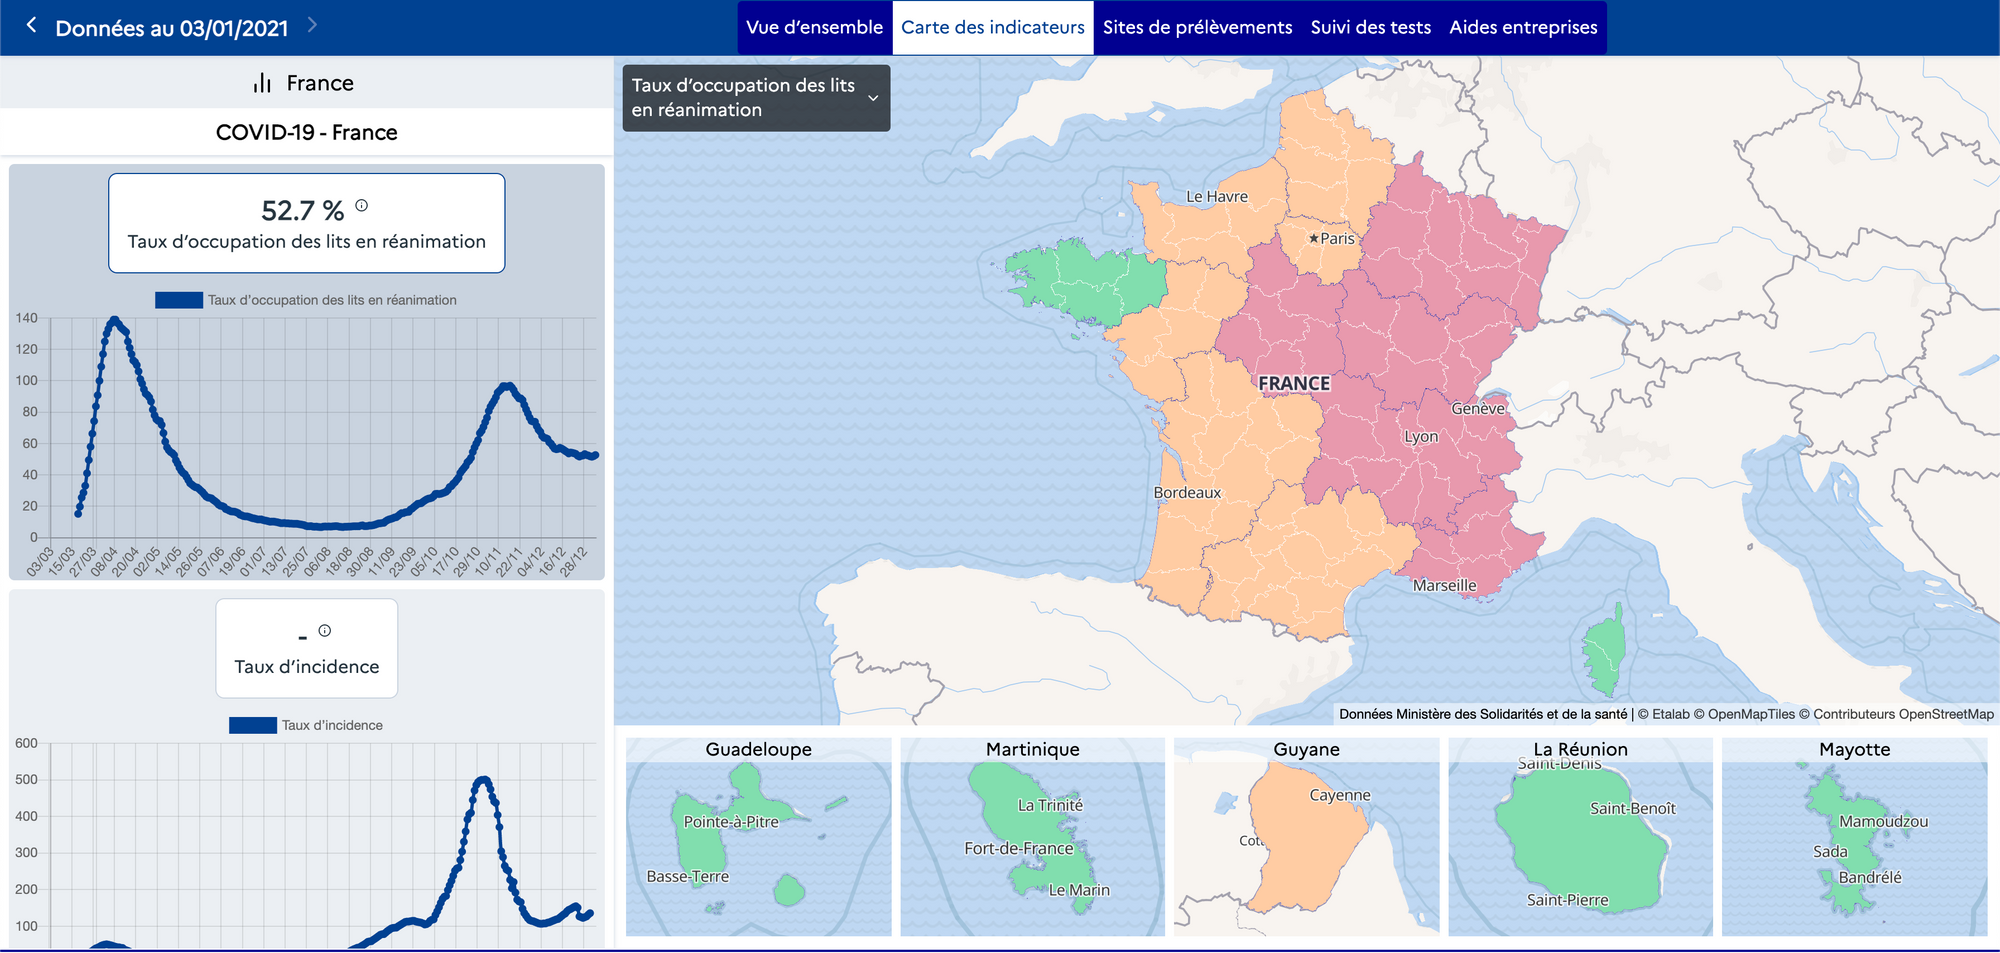 Carte des indicateurs COVID 19 en France